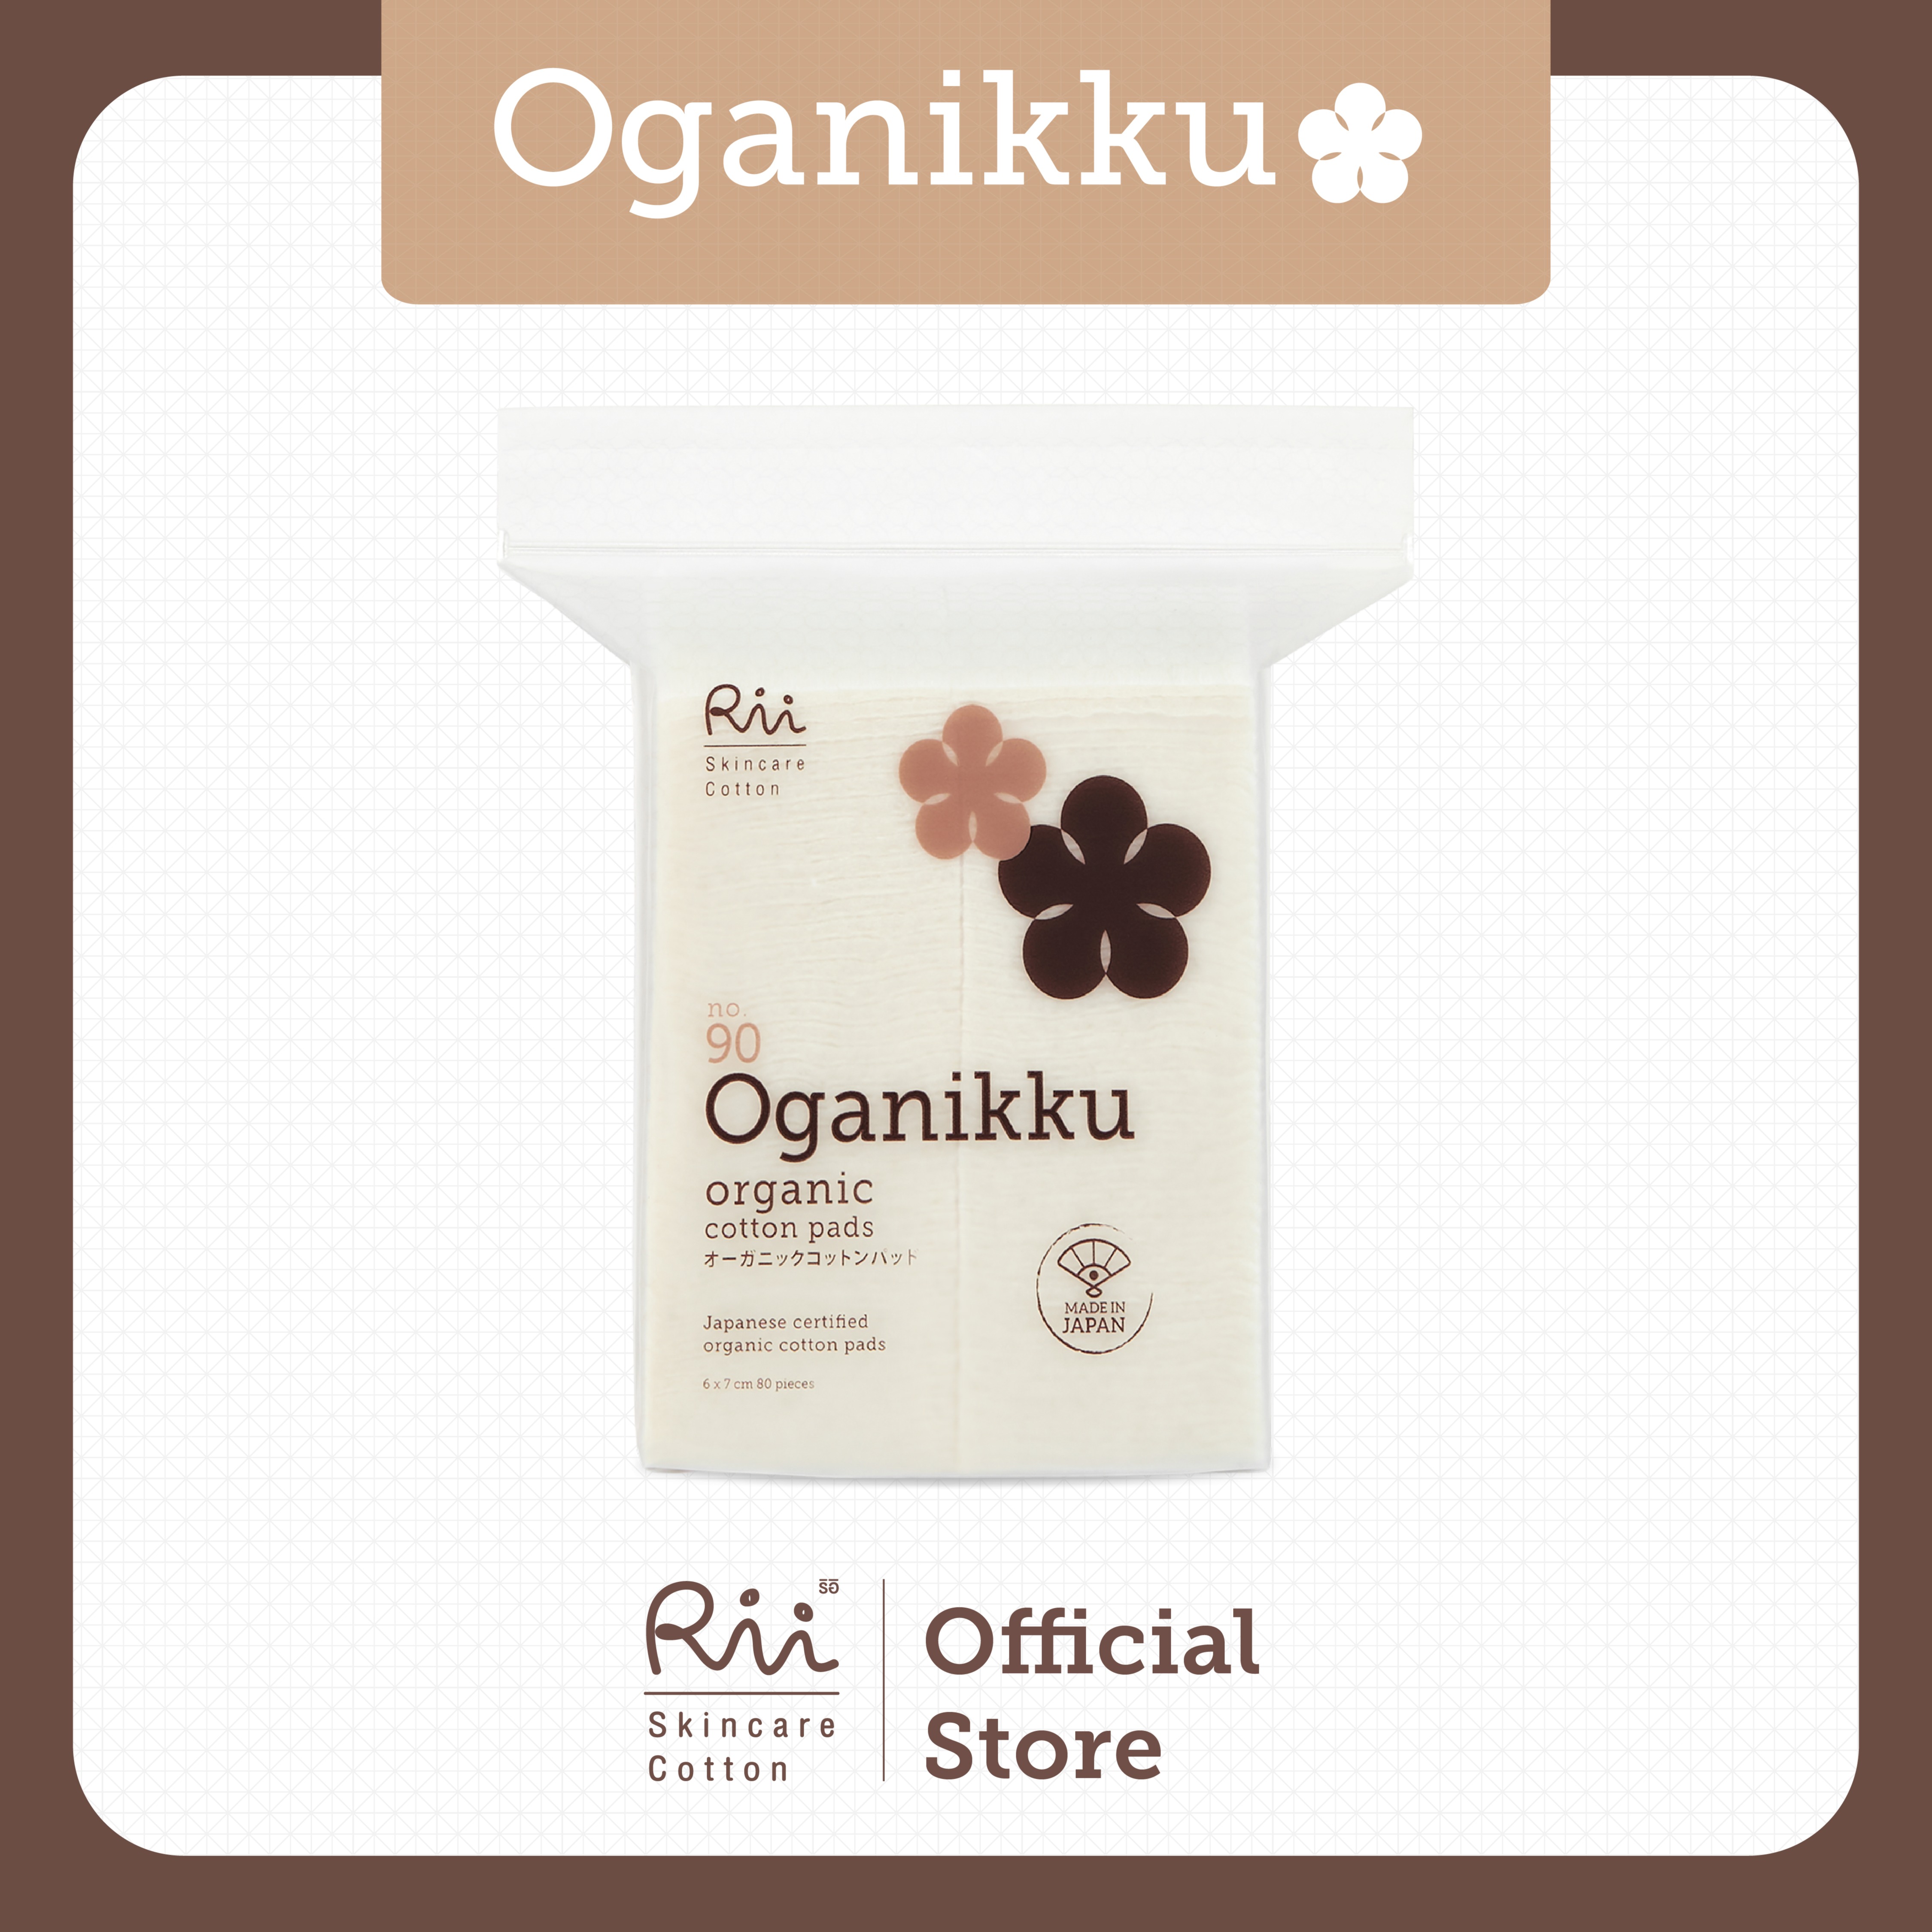 แนะนำ Rii 90 Oganikku Organic Cotton Pads